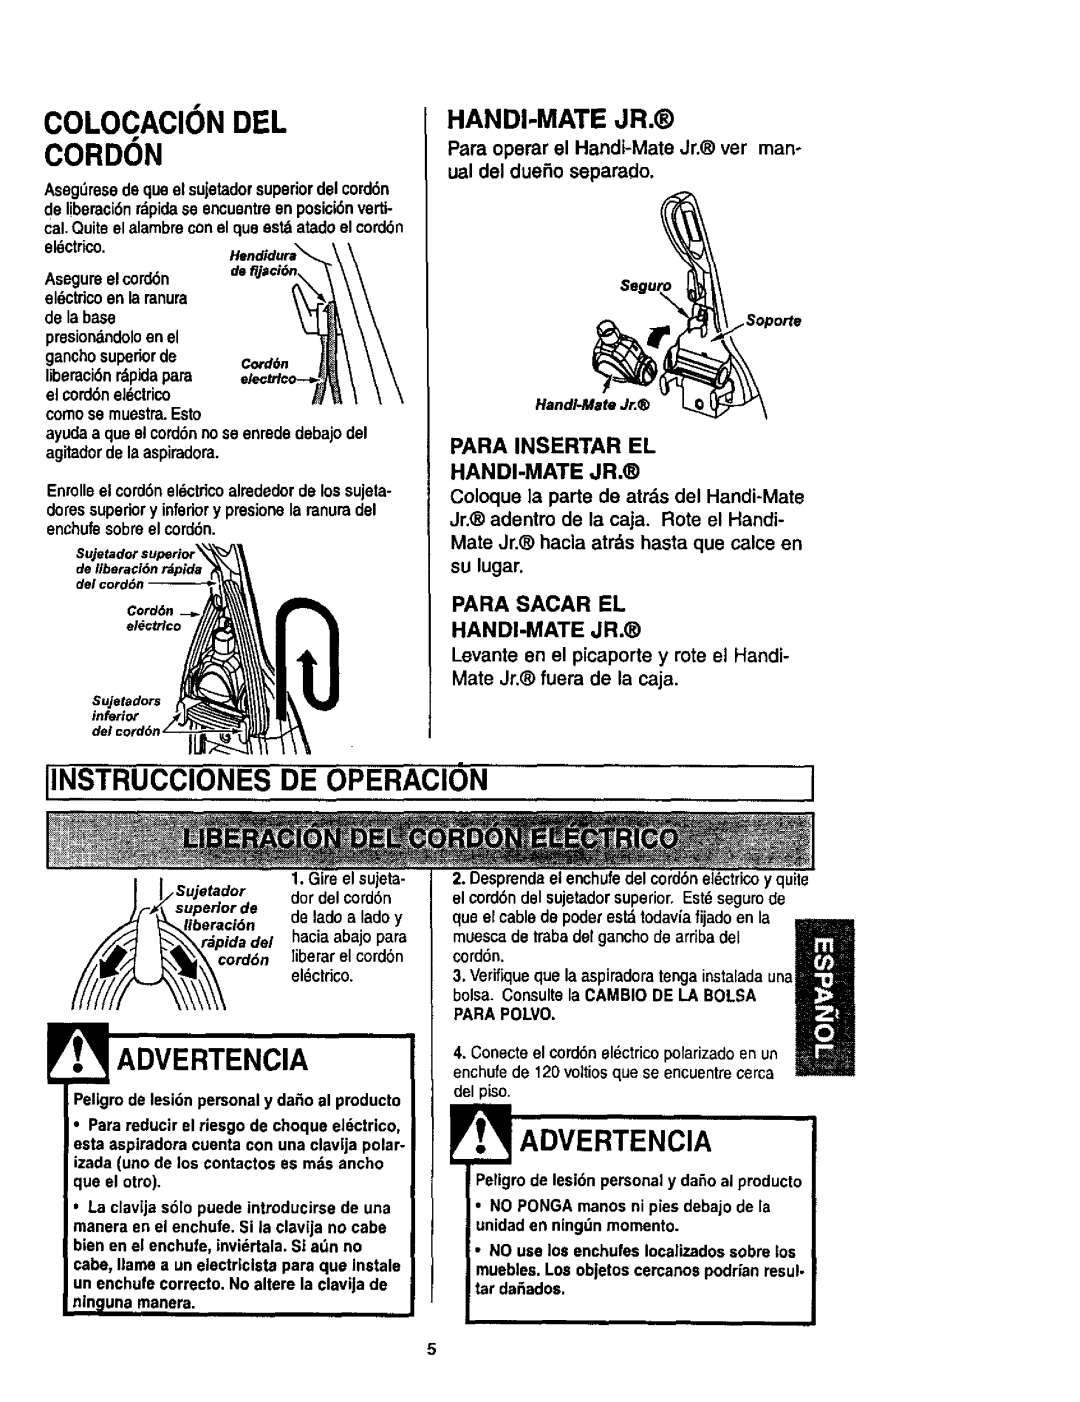 Kenmore 116.35622 COLOCAClONDEL CORDON, Iinstrucciones De Operacion, Advertencia, Para Sacar El Handi-Matejr 